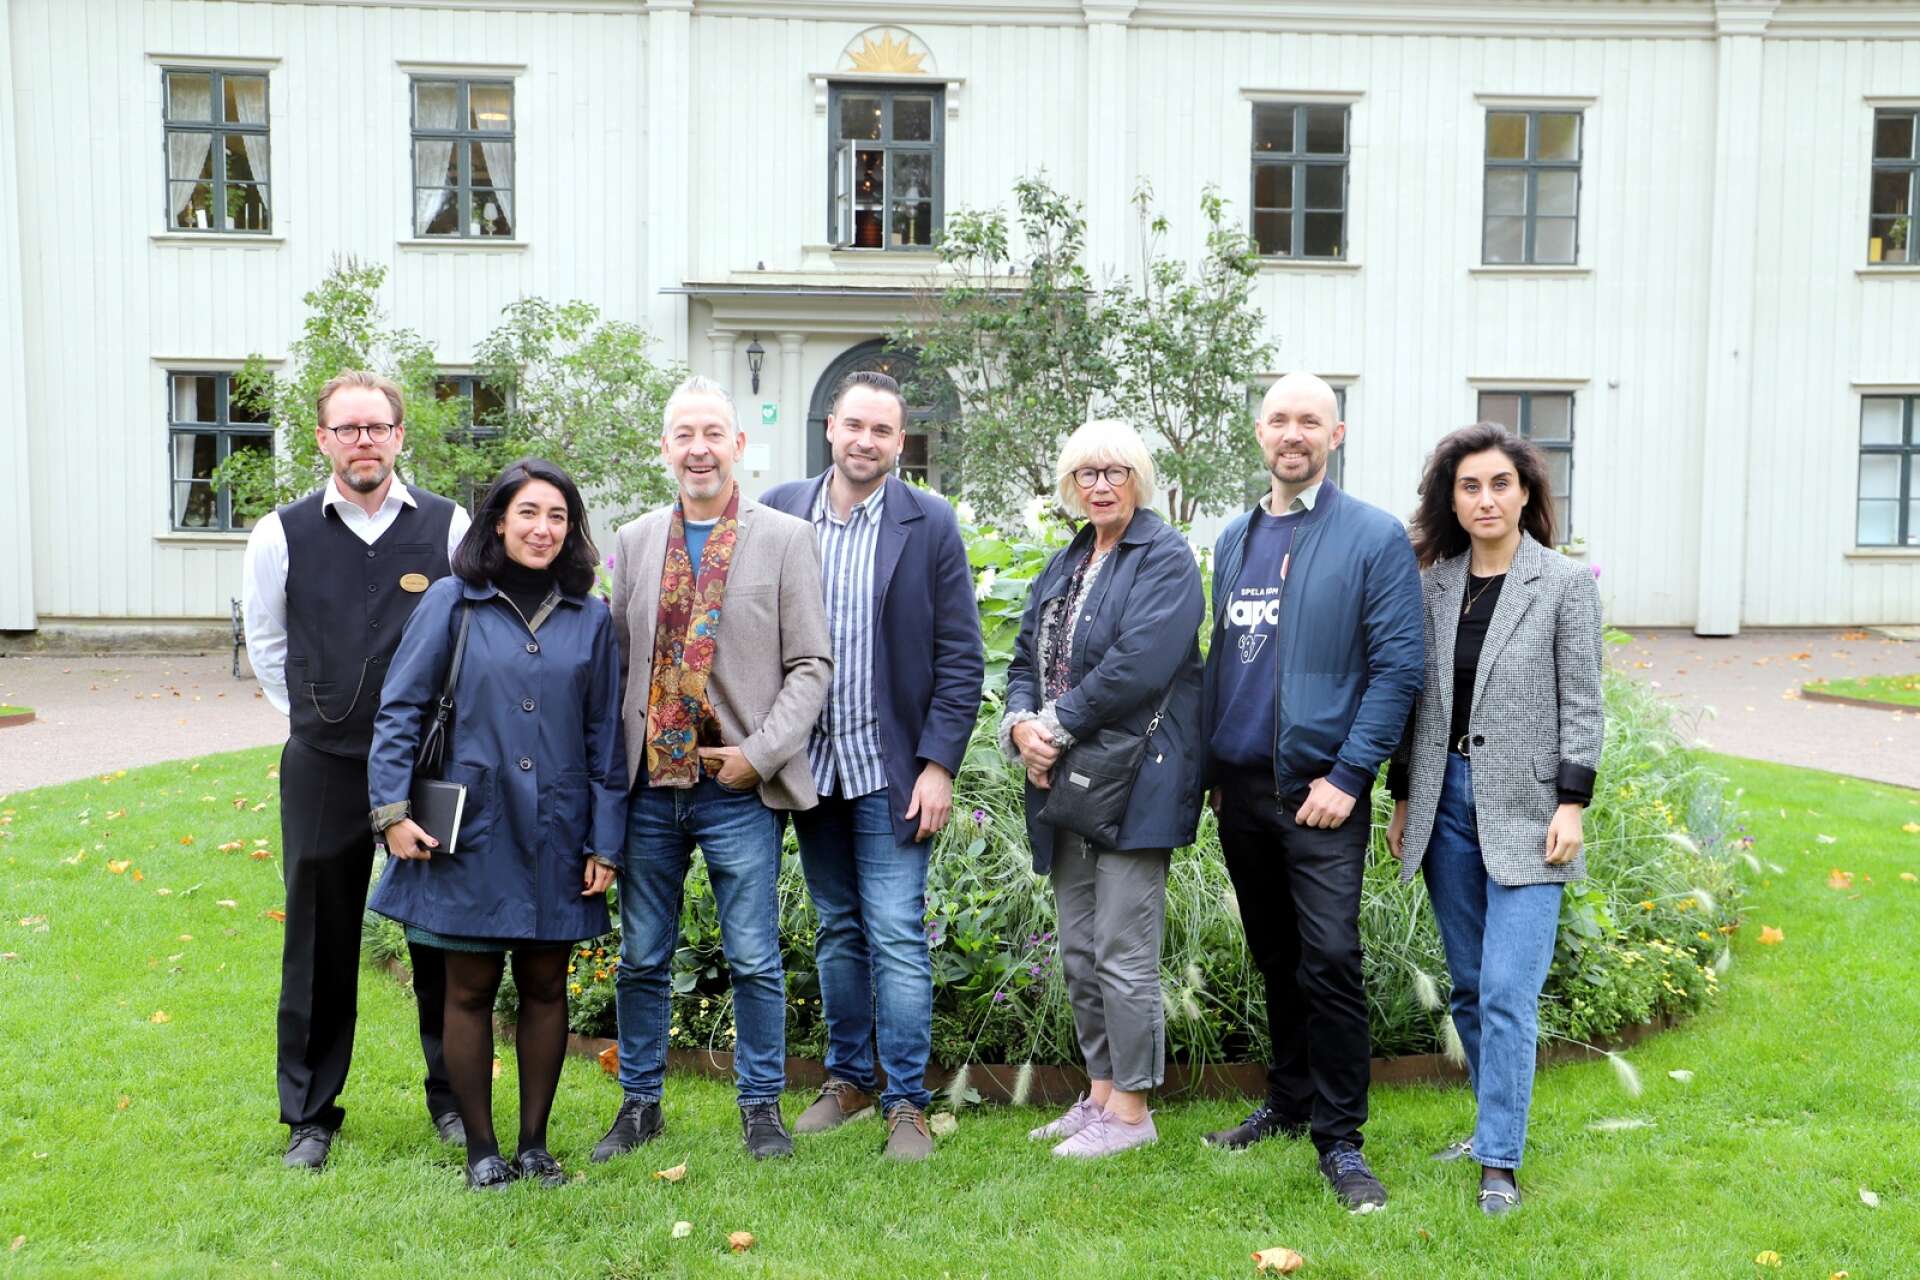 Socialdemokraterna i riksdagens kulturutskott på Värmlandsbesök. Här är de vid Alsters herrgård, där de fick information om både Fröding och det stora besöksmål som herrgården utgör.